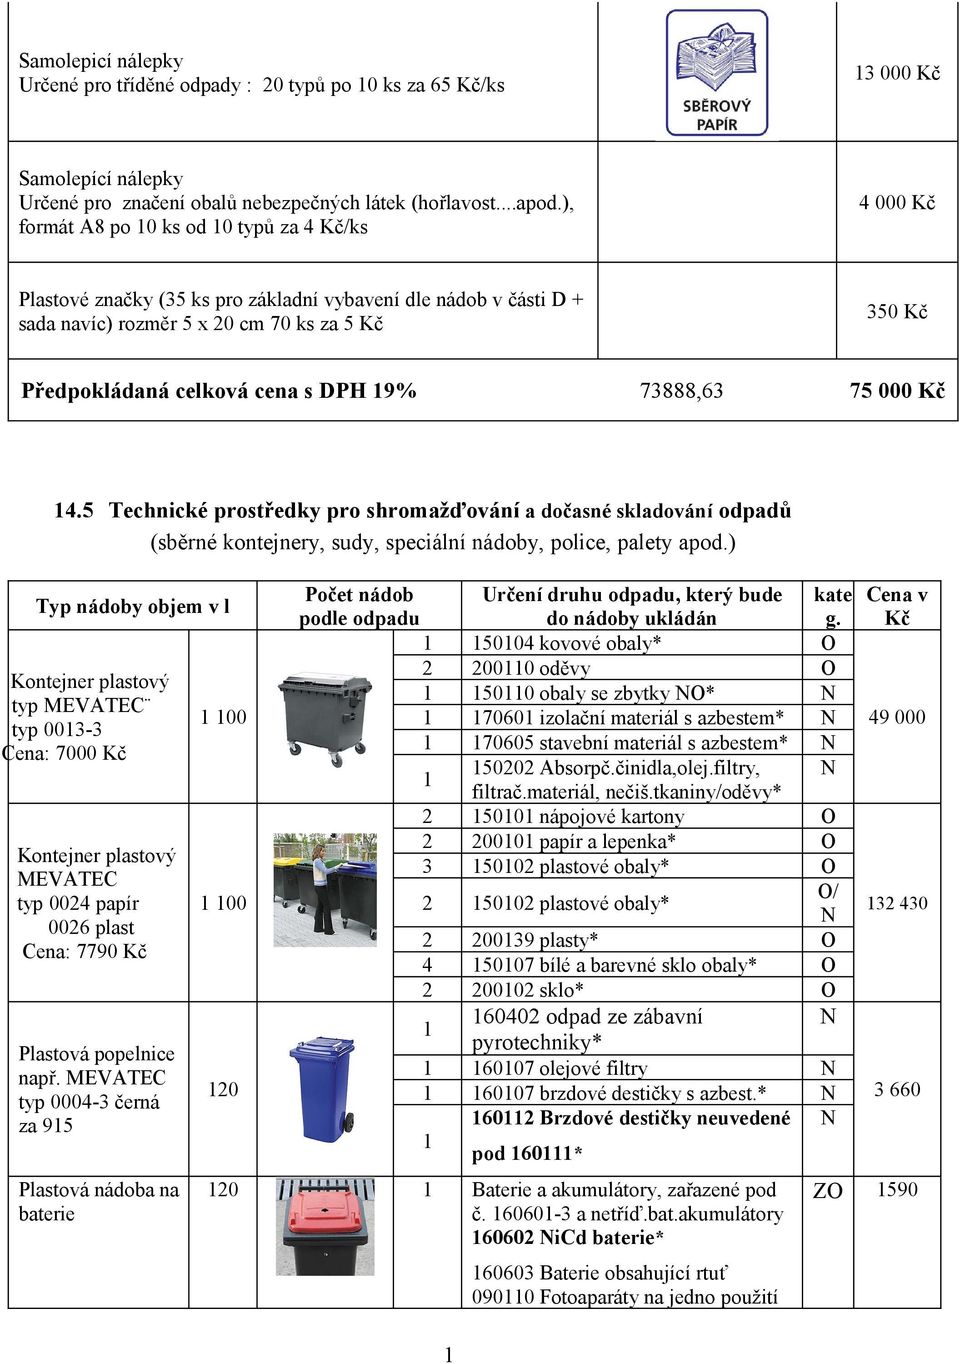 DPH 9% 73888,63 75 000 Kč 4.5 Technické prostředky pro shromažďování a dočasné skladování odpadů (sběrné kontejnery, sudy, speciální nádoby, police, palety apod.